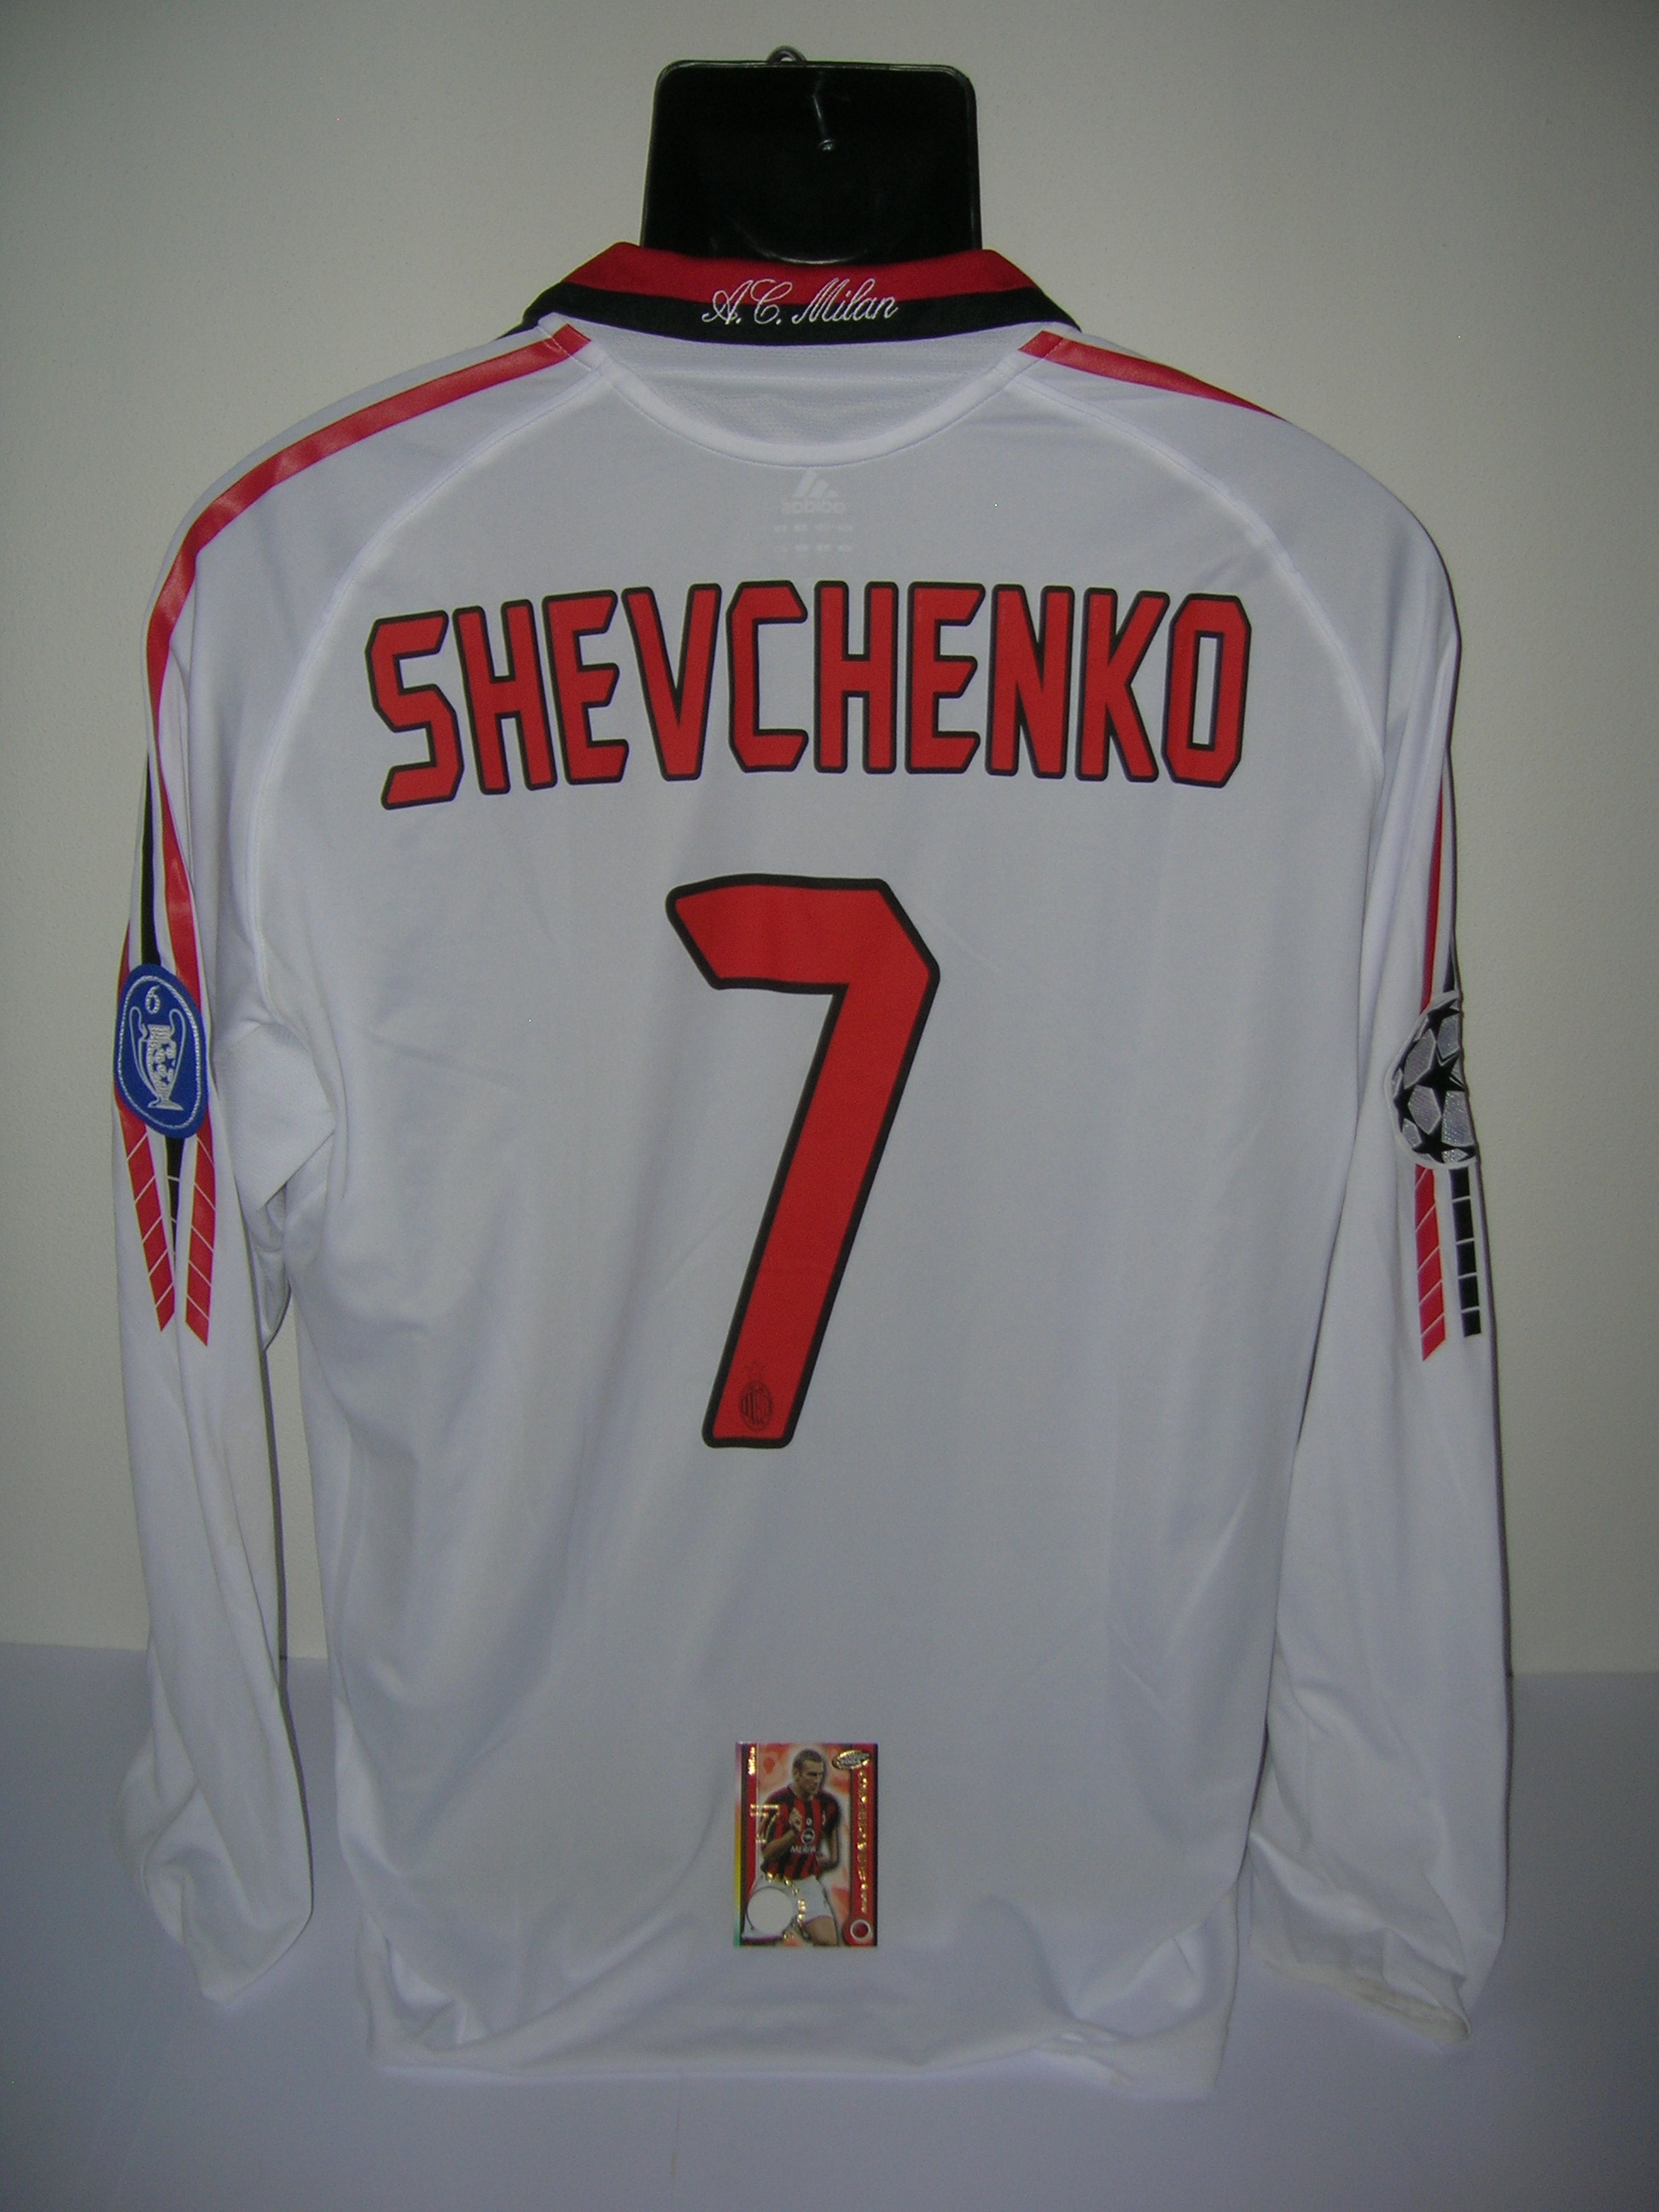 Shevchenko n.7 Milan  B